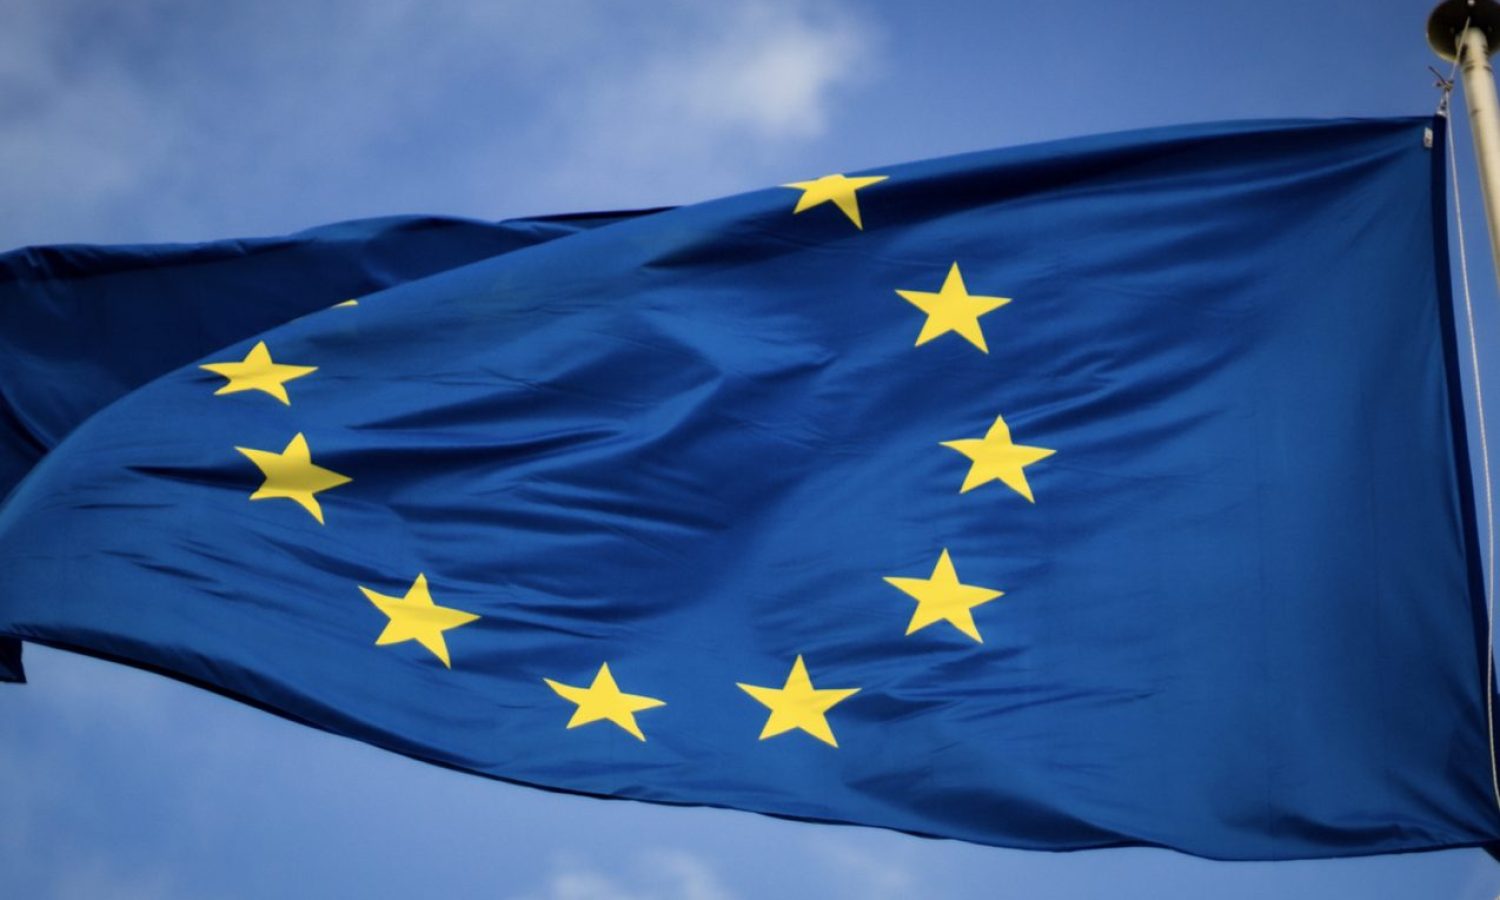 EU-Flag-by-Christian-Lue